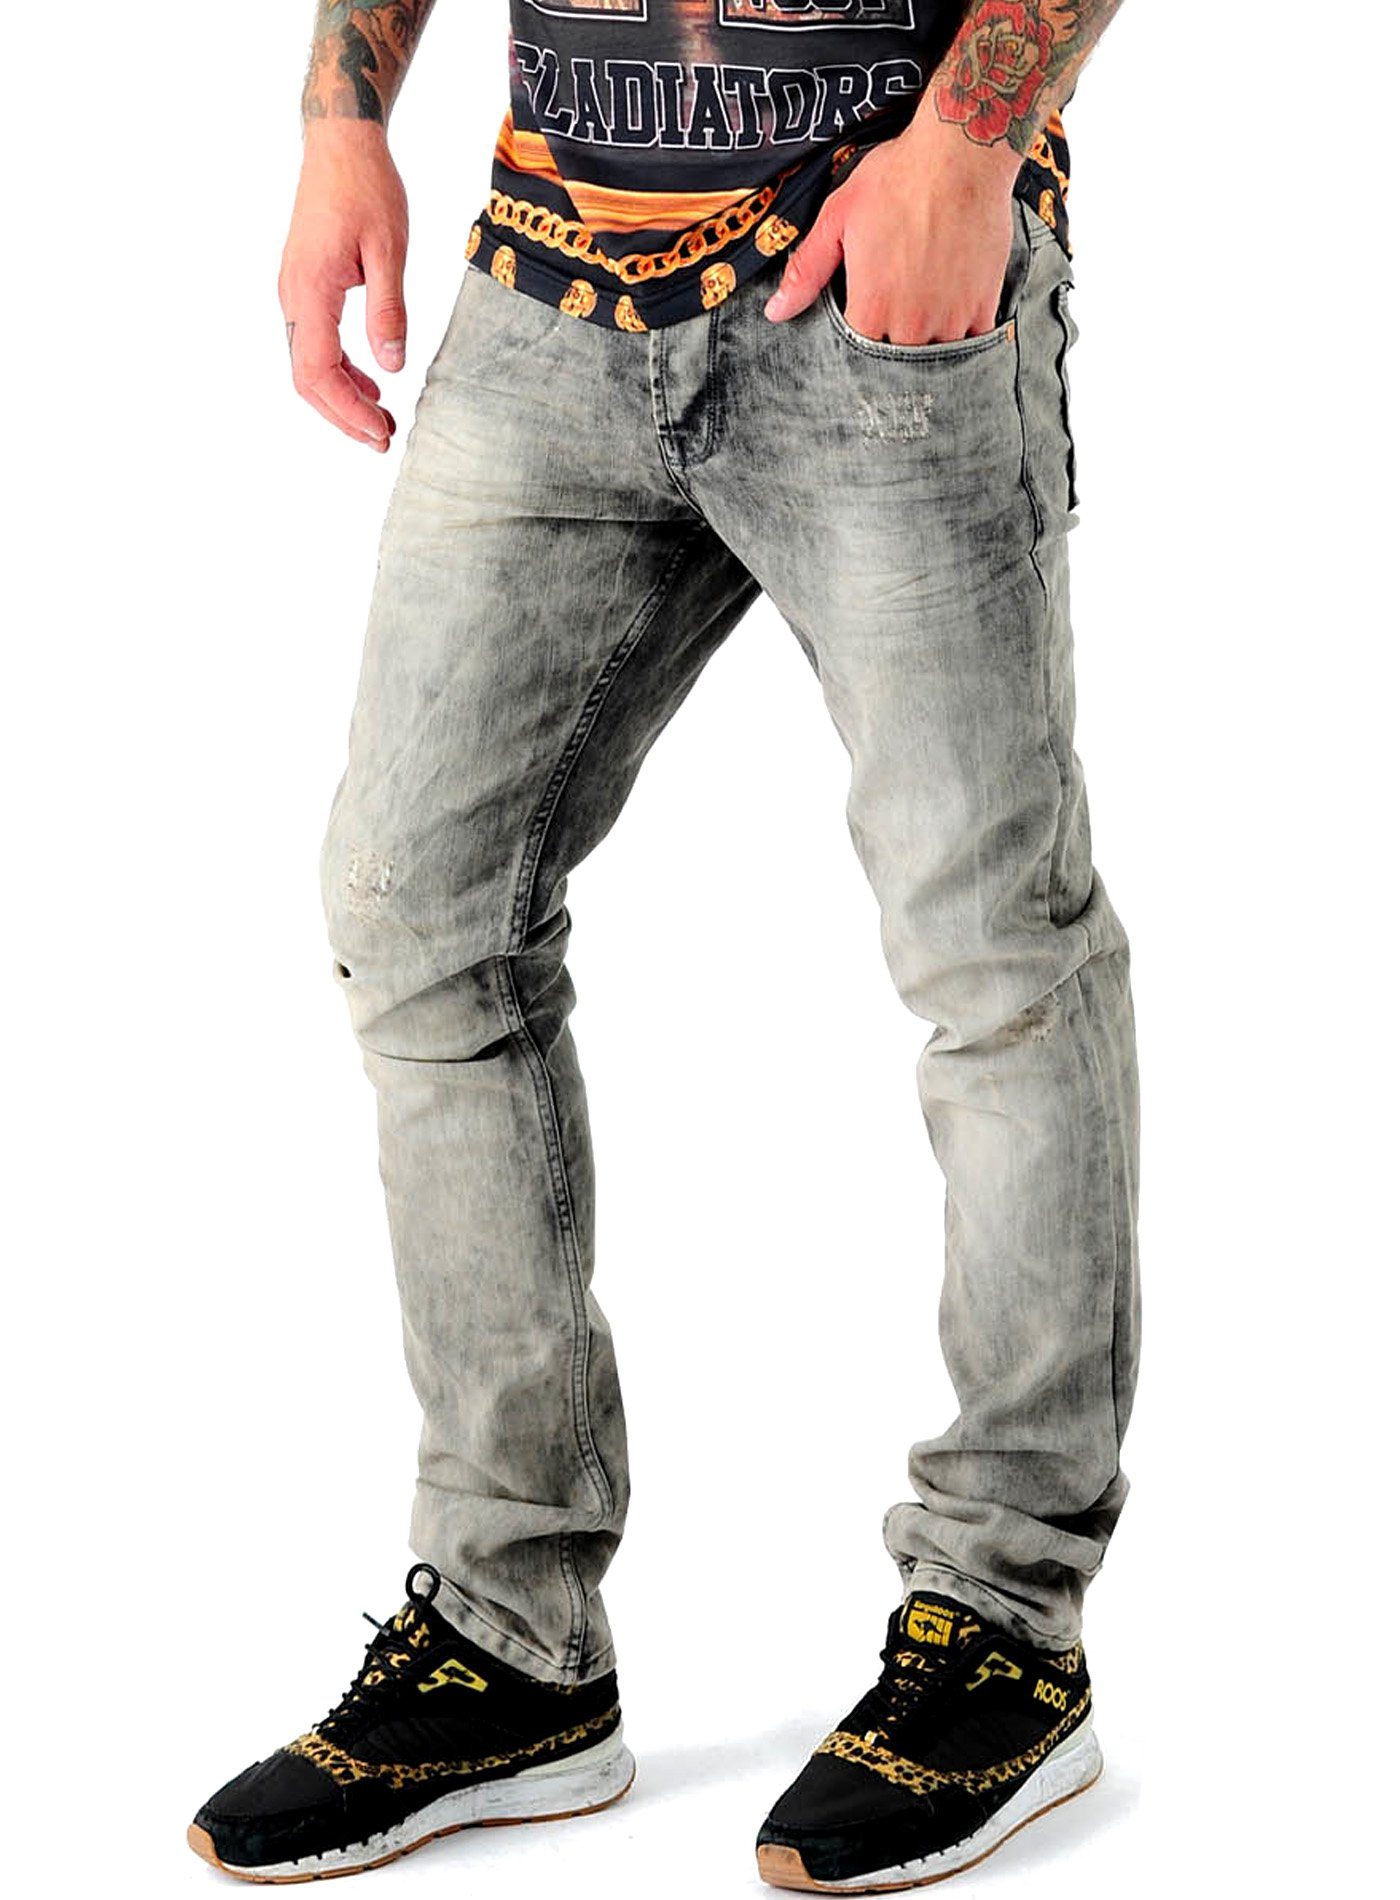 Fit Fit 5-Pocket Männer-Hose Stretch-Jeans Slim VSCT Anthony Jeans Herren VSCT Slim Hose Jeans